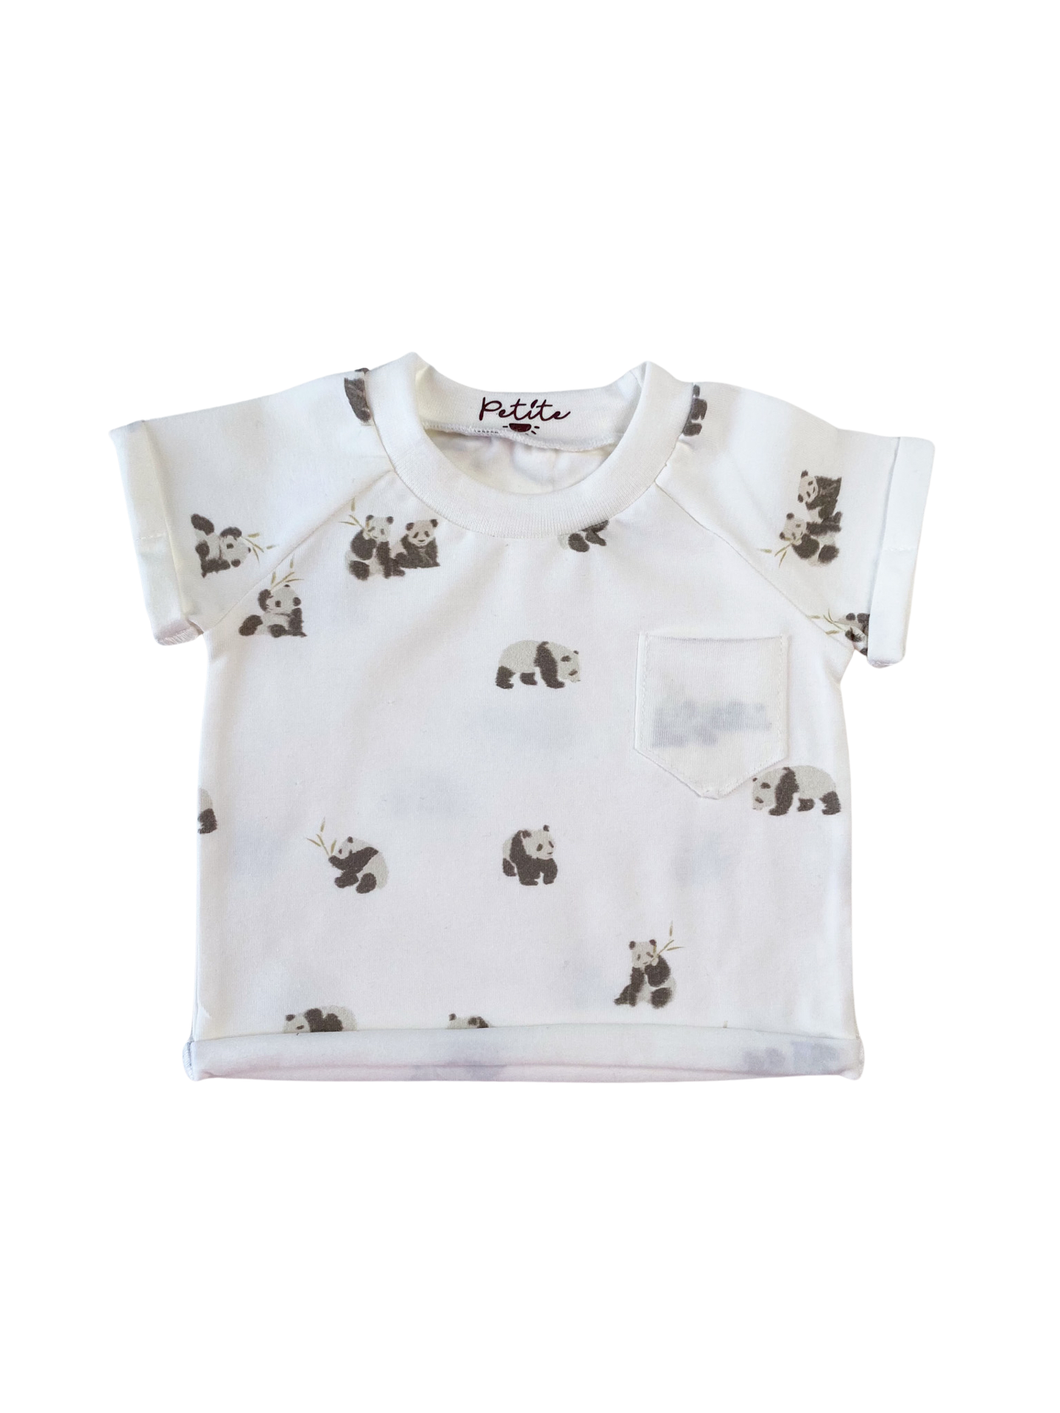 Cotton T-Shirt - Panda